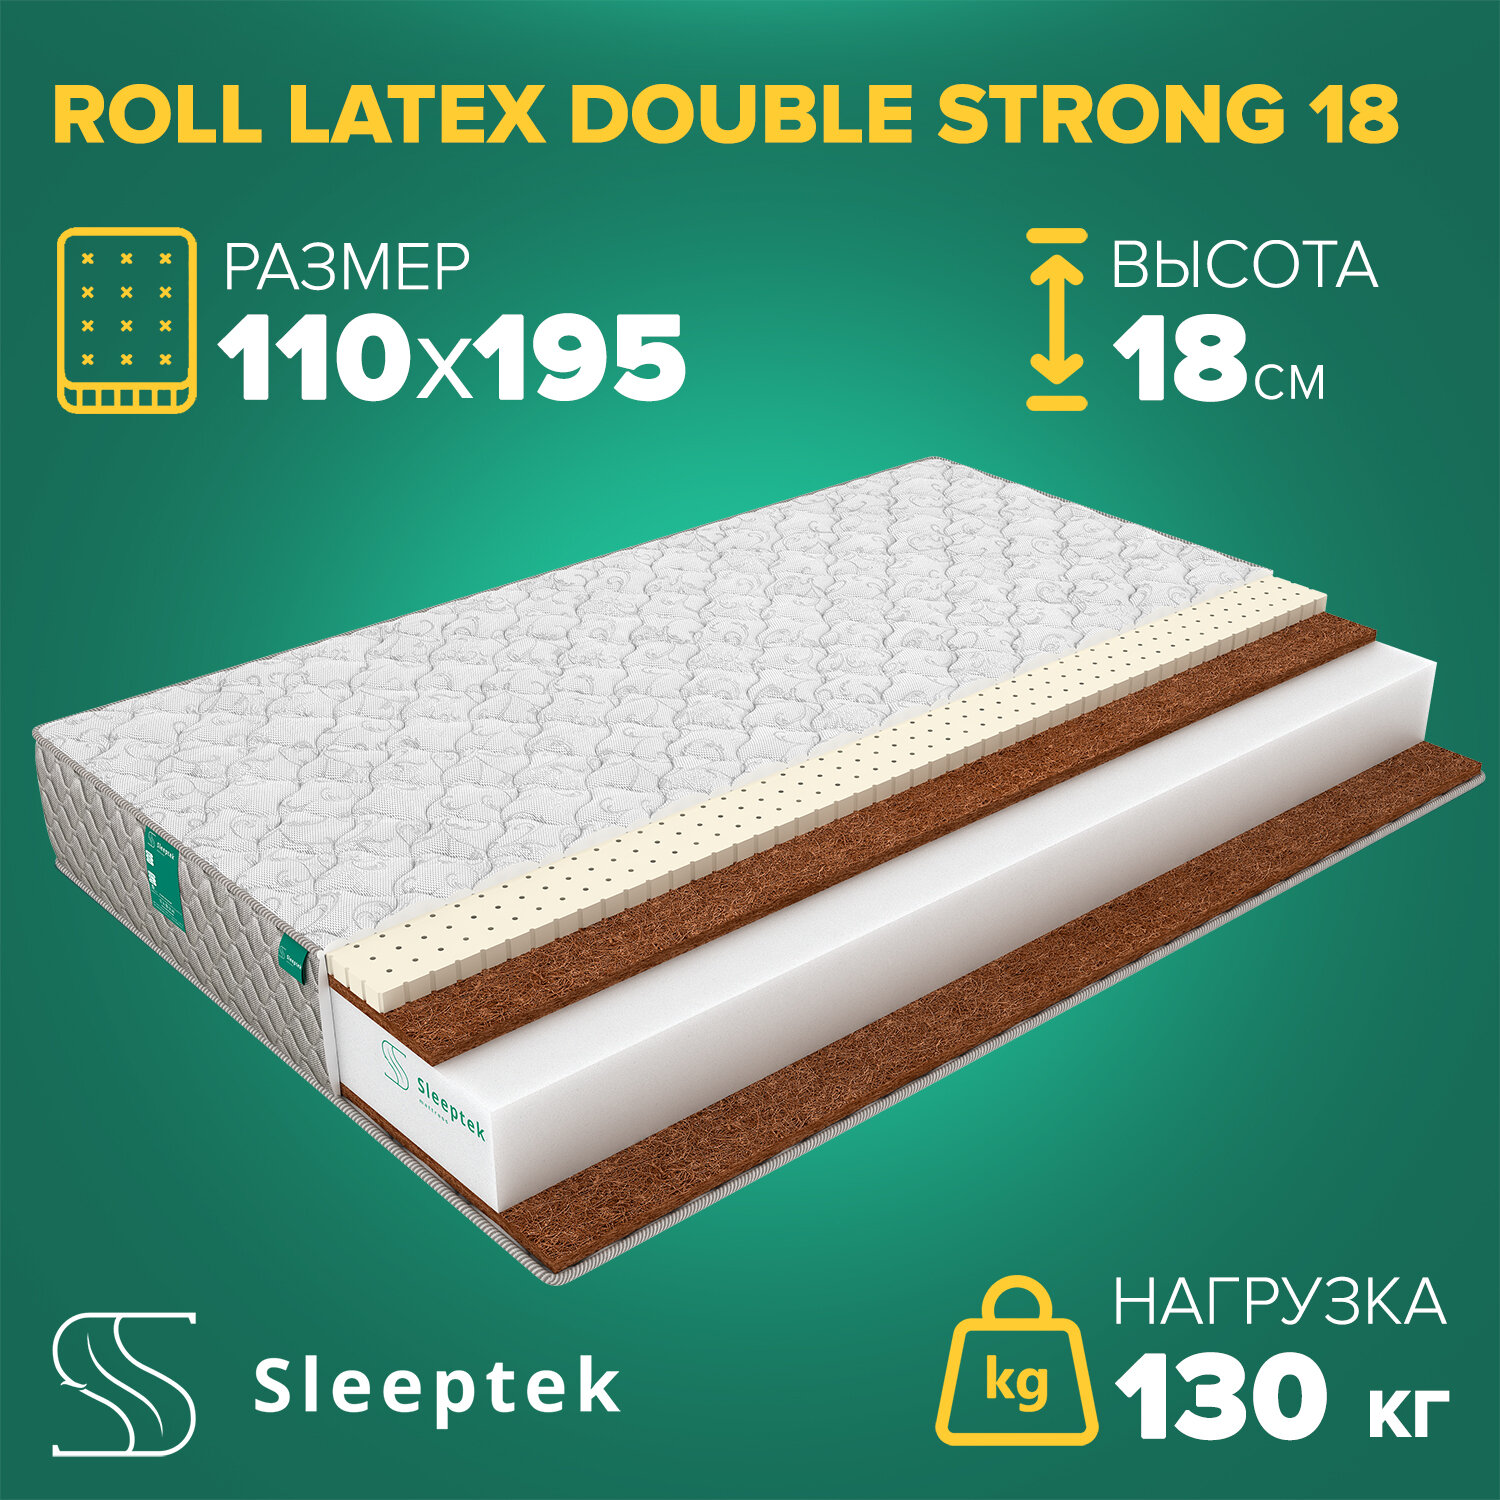 Матрас Sleeptek Roll Latex DoubleStrong 18 110х195